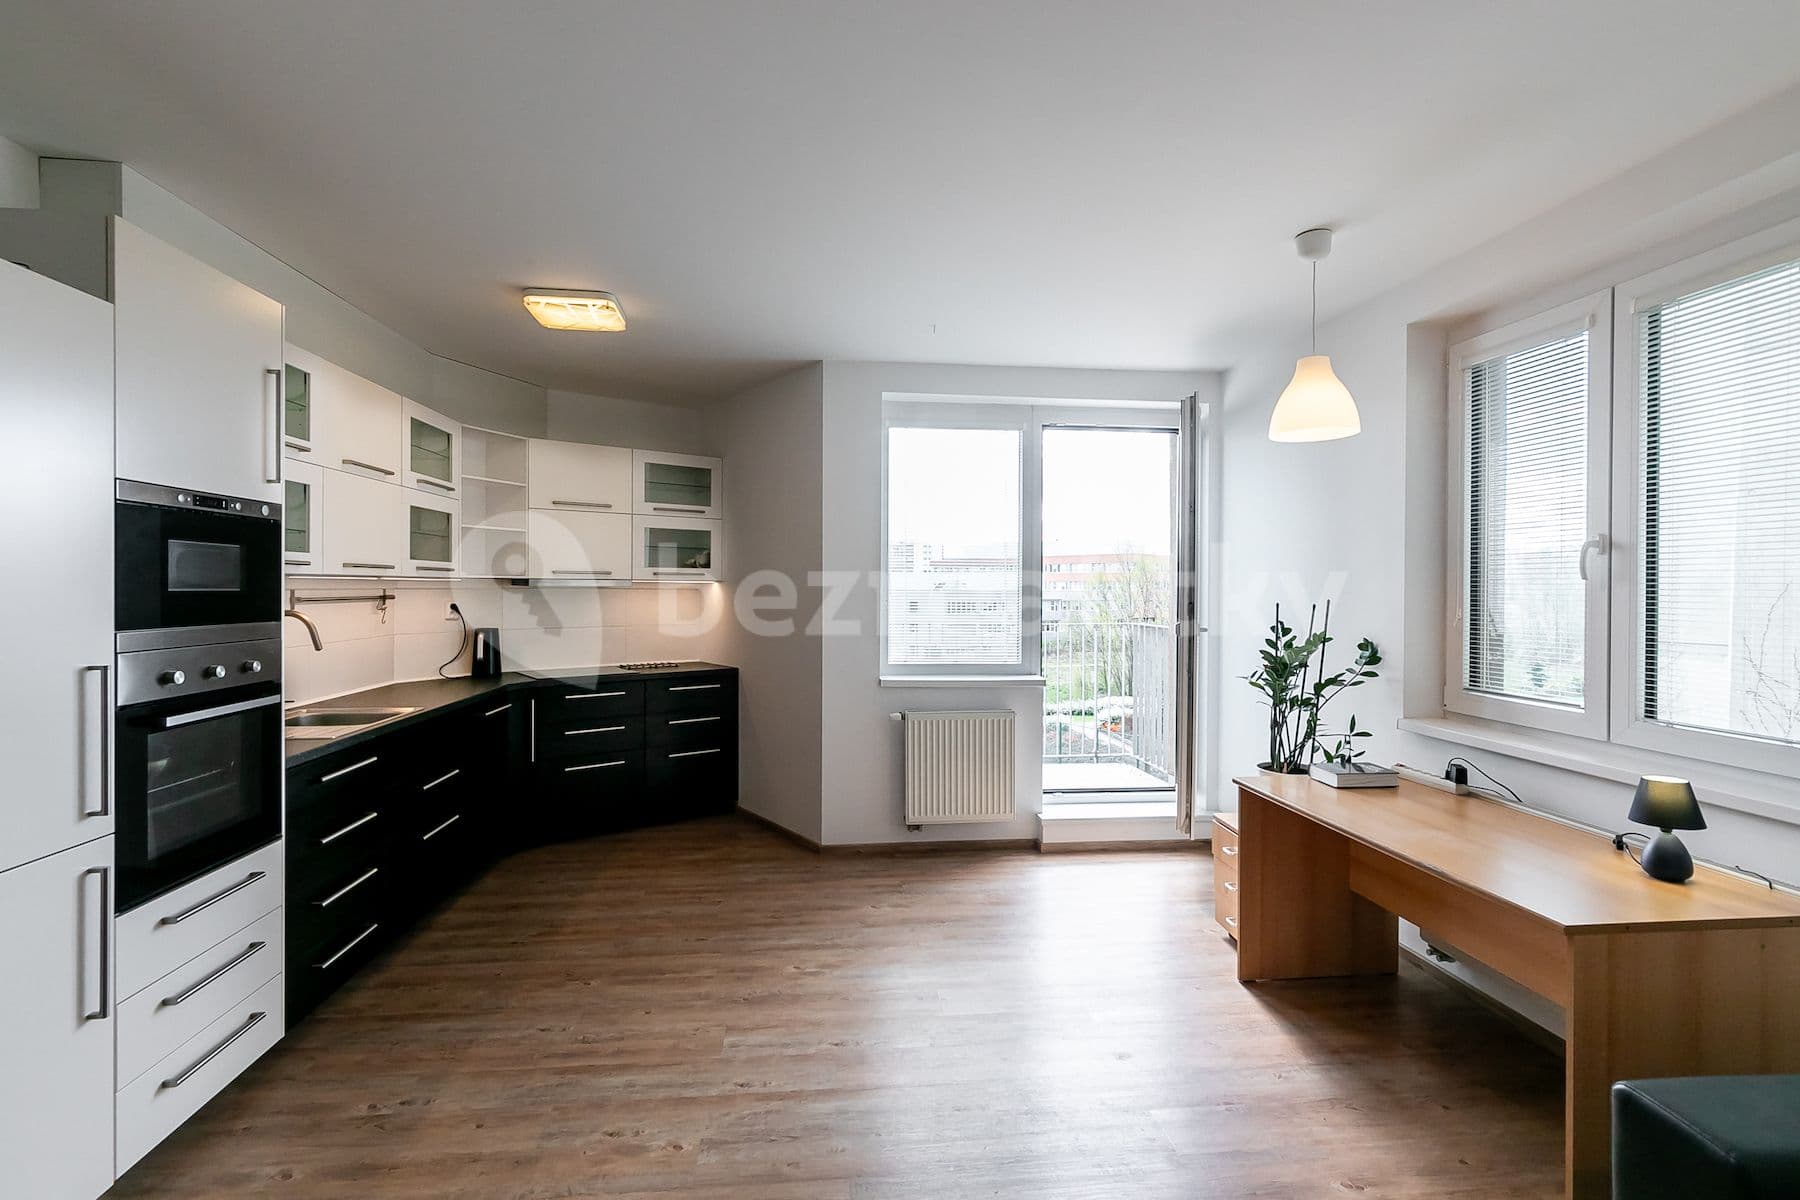 1 bedroom with open-plan kitchen flat for sale, 56 m², Zakšínská, Prague, Prague